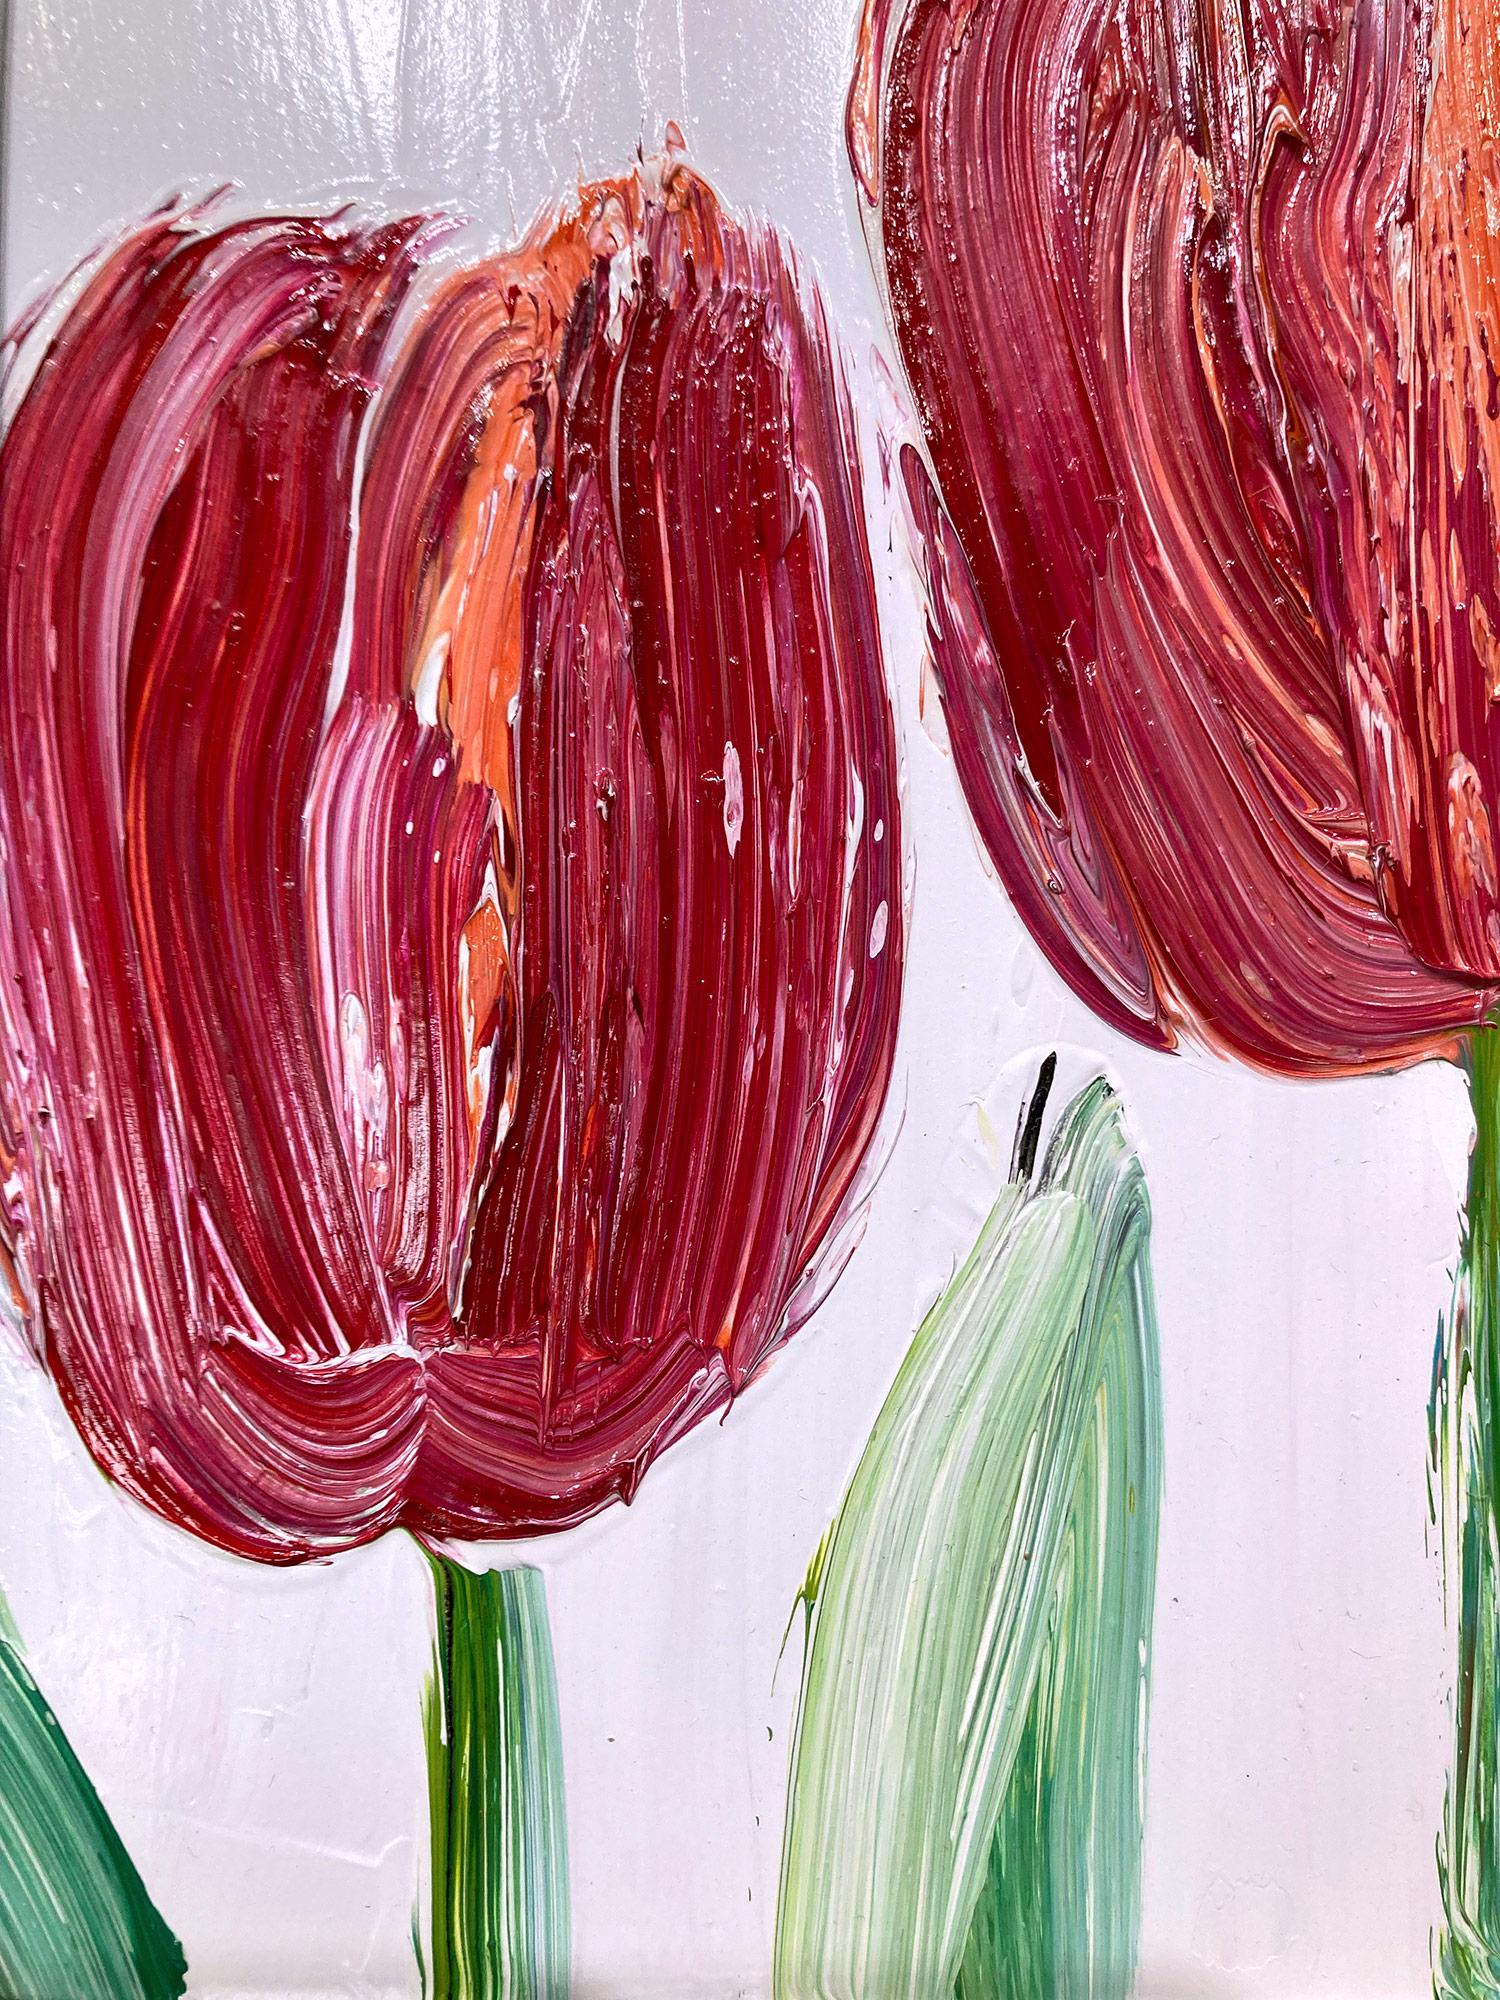 Une magnifique composition de l'une des plus récentes séries de Slonem, Tulipes. Cette œuvre représente des figures gestuelles de deux tulipes rouges et orange sur un fond lavande doux, avec une utilisation épaisse de la peinture. Inspirées par la